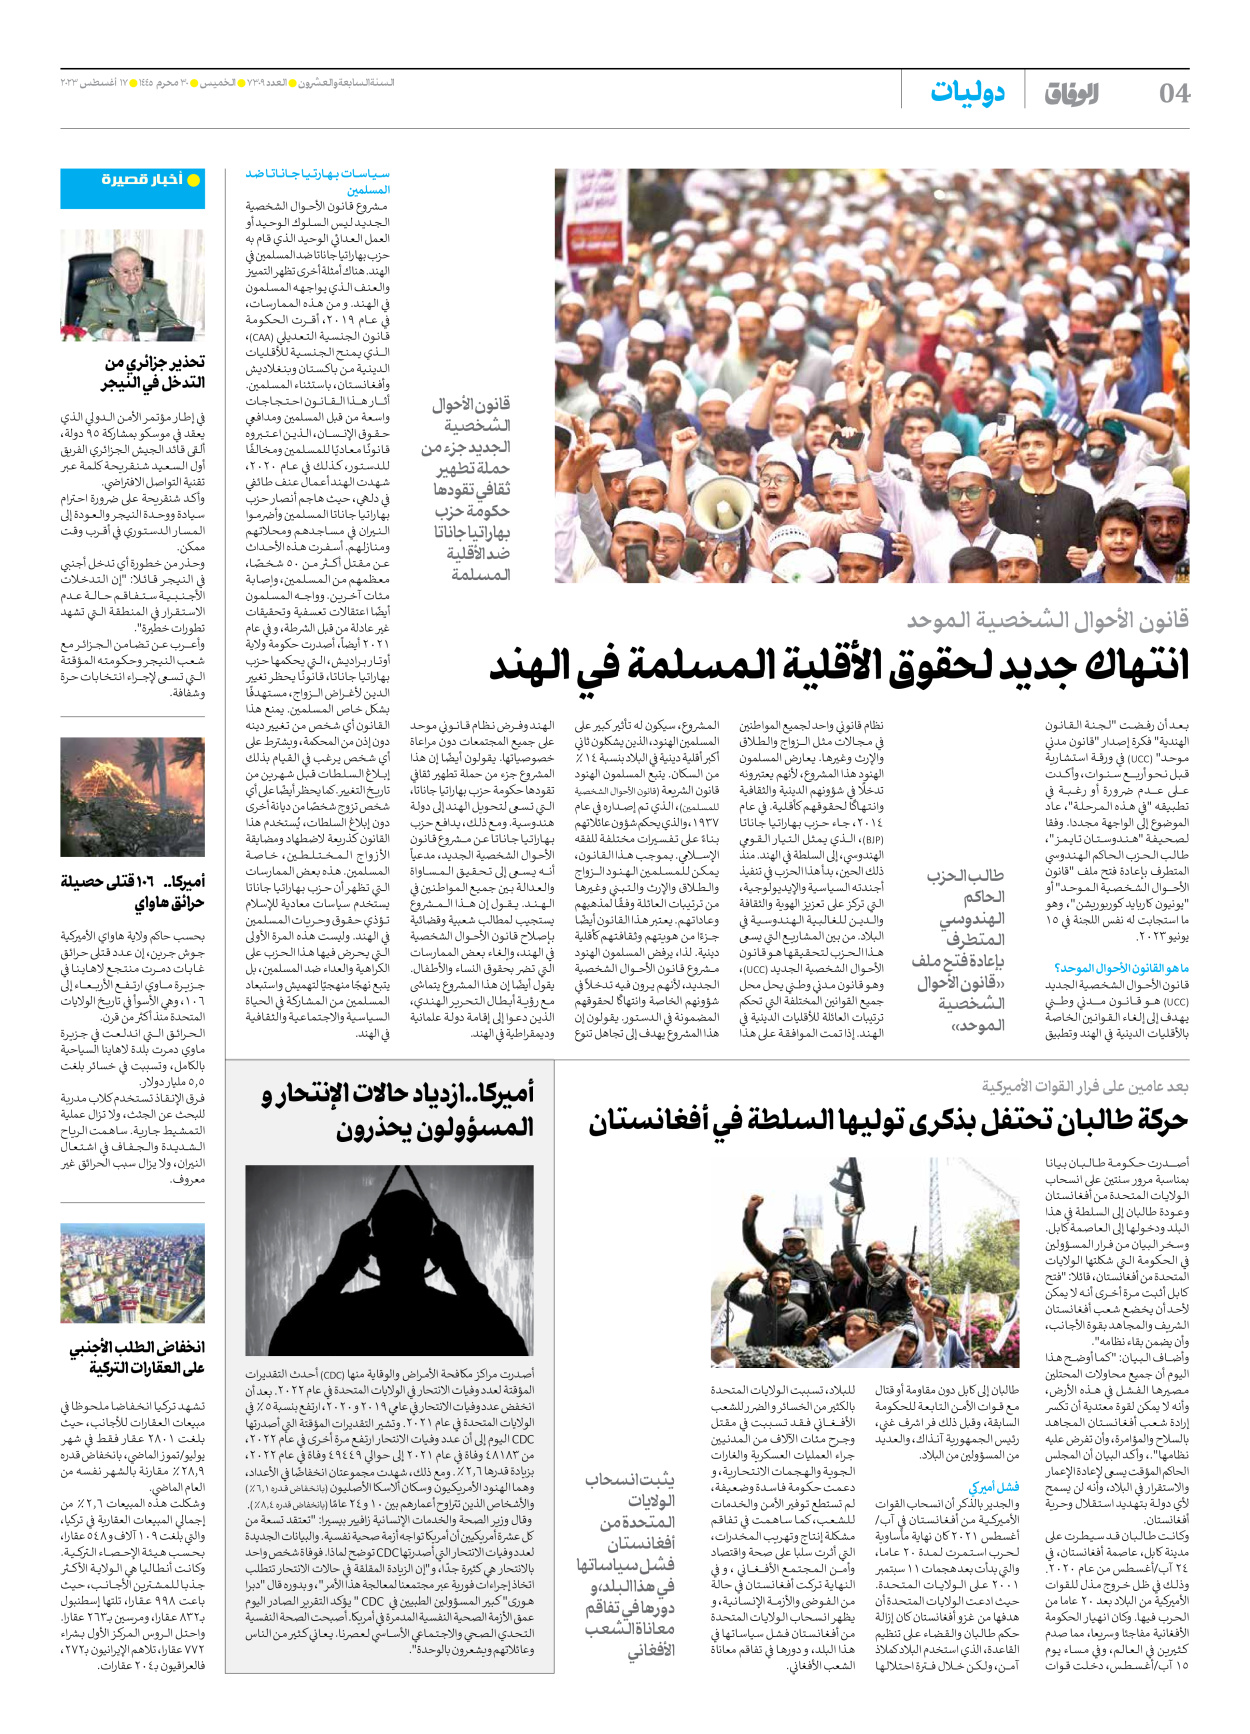 صحیفة ایران الدولیة الوفاق - العدد سبعة آلاف وثلاثمائة وتسعة - ١٧ أغسطس ٢٠٢٣ - الصفحة ٤